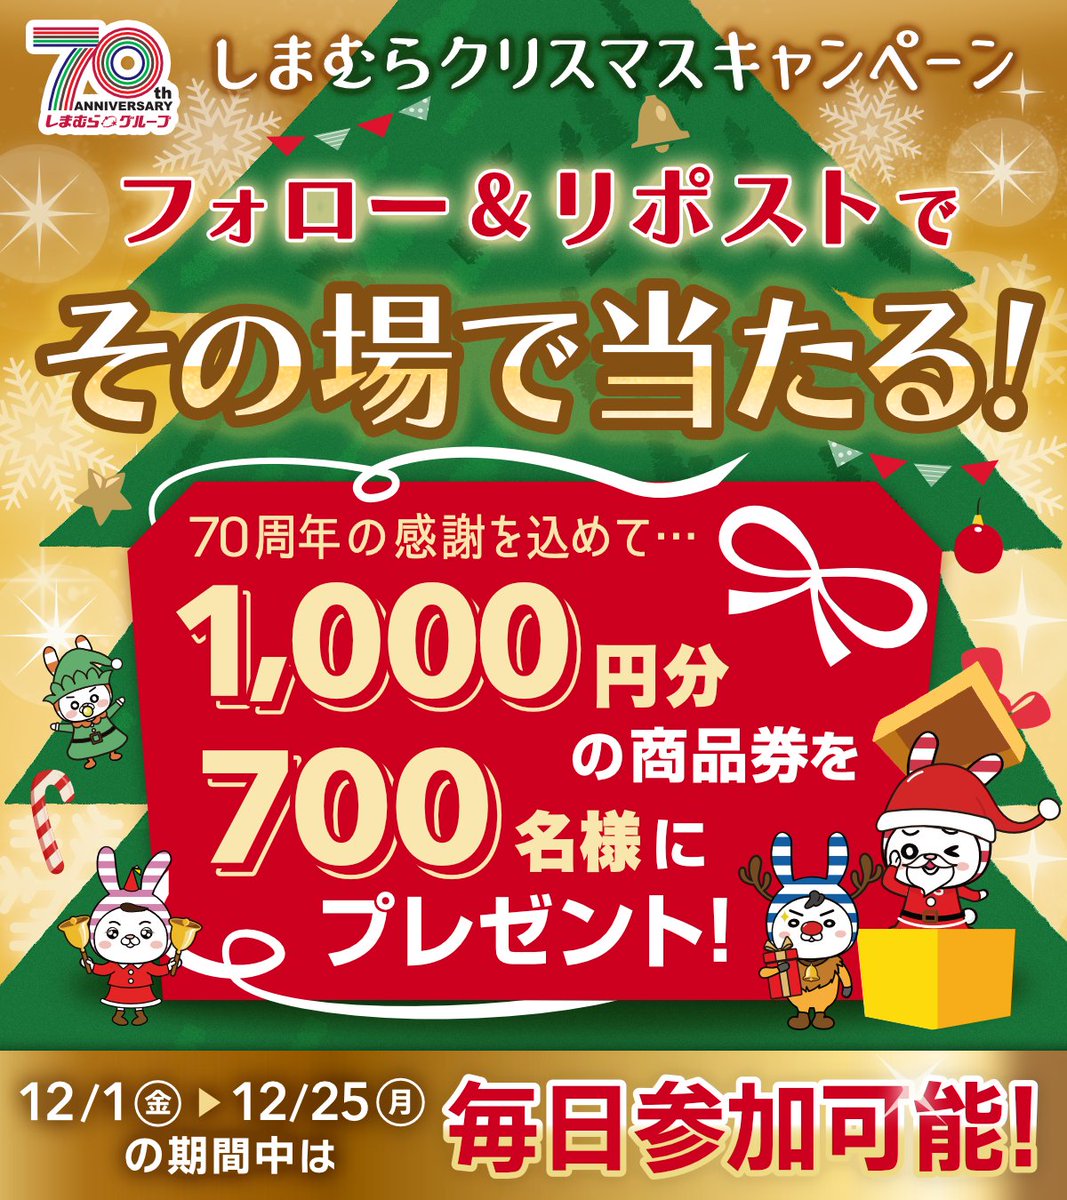 ◤終了まであと4️⃣日❗◢ #しまむらクリスマス キャンペーン🎄 グループ共通商品券を700名様にプレゼント🎁 1️⃣@shimamura_grをフォロー 2️⃣この投稿をリポスト リプライから結果を確認🎅 12/25(月)まで ▼今週のチラシ shimamura.gr.jp/shimamura/flie… ▼規約 shimamura.ownly.jp/join/29293 #クリスマスボックス